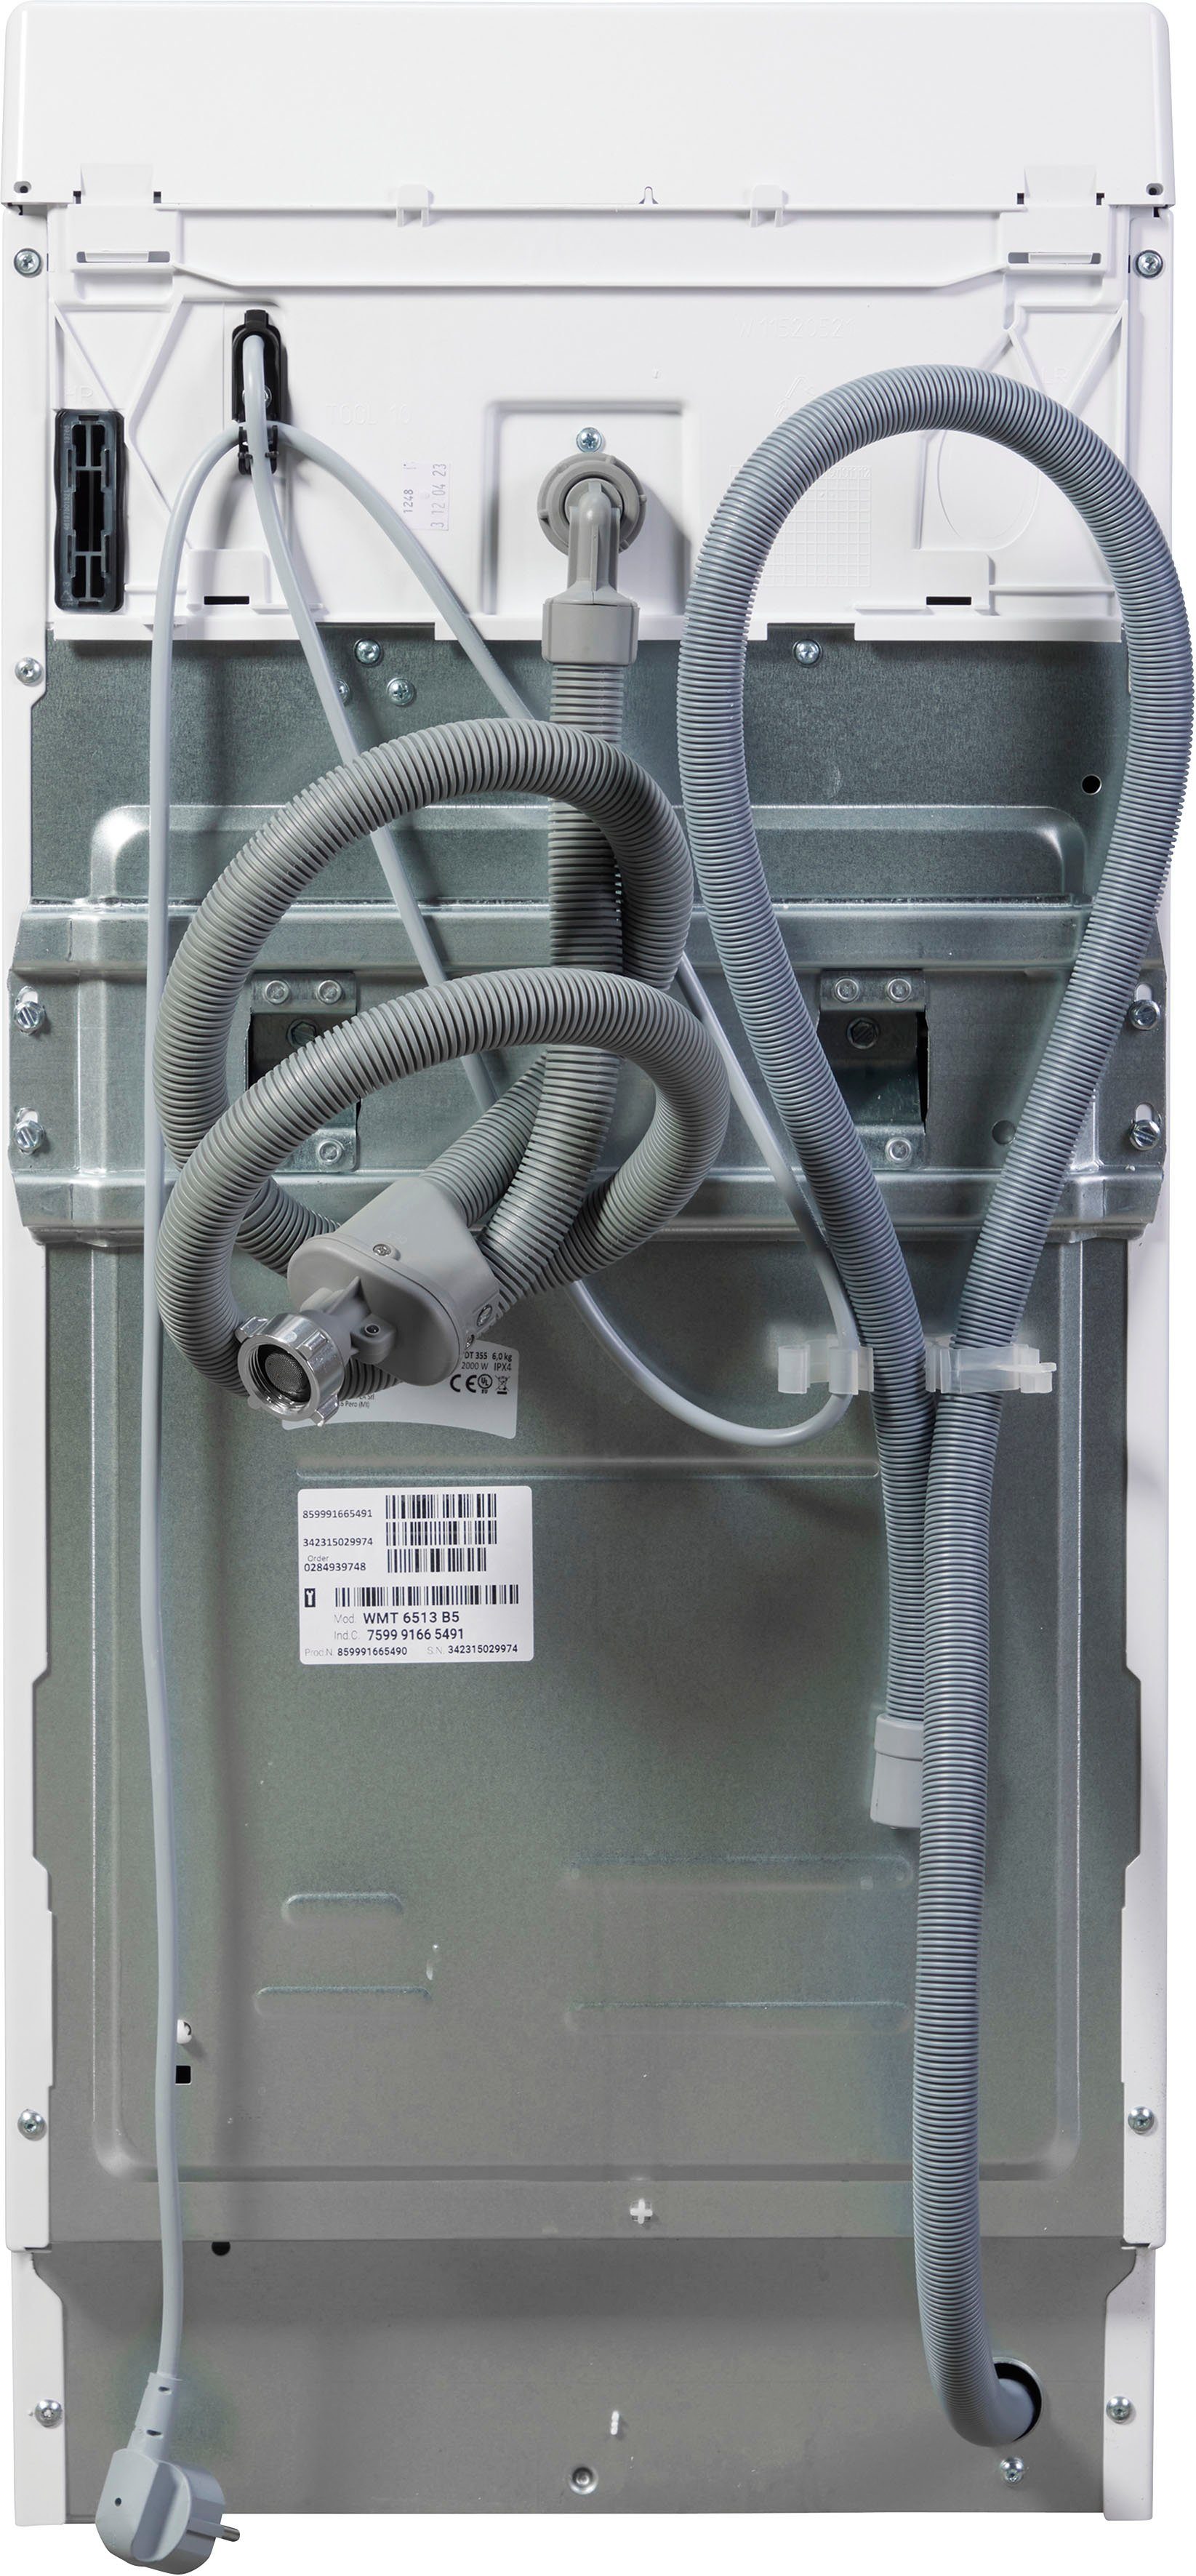 BAUKNECHT Waschmaschine Toplader WMT 6513 U/min B5, 6 kg, 1200